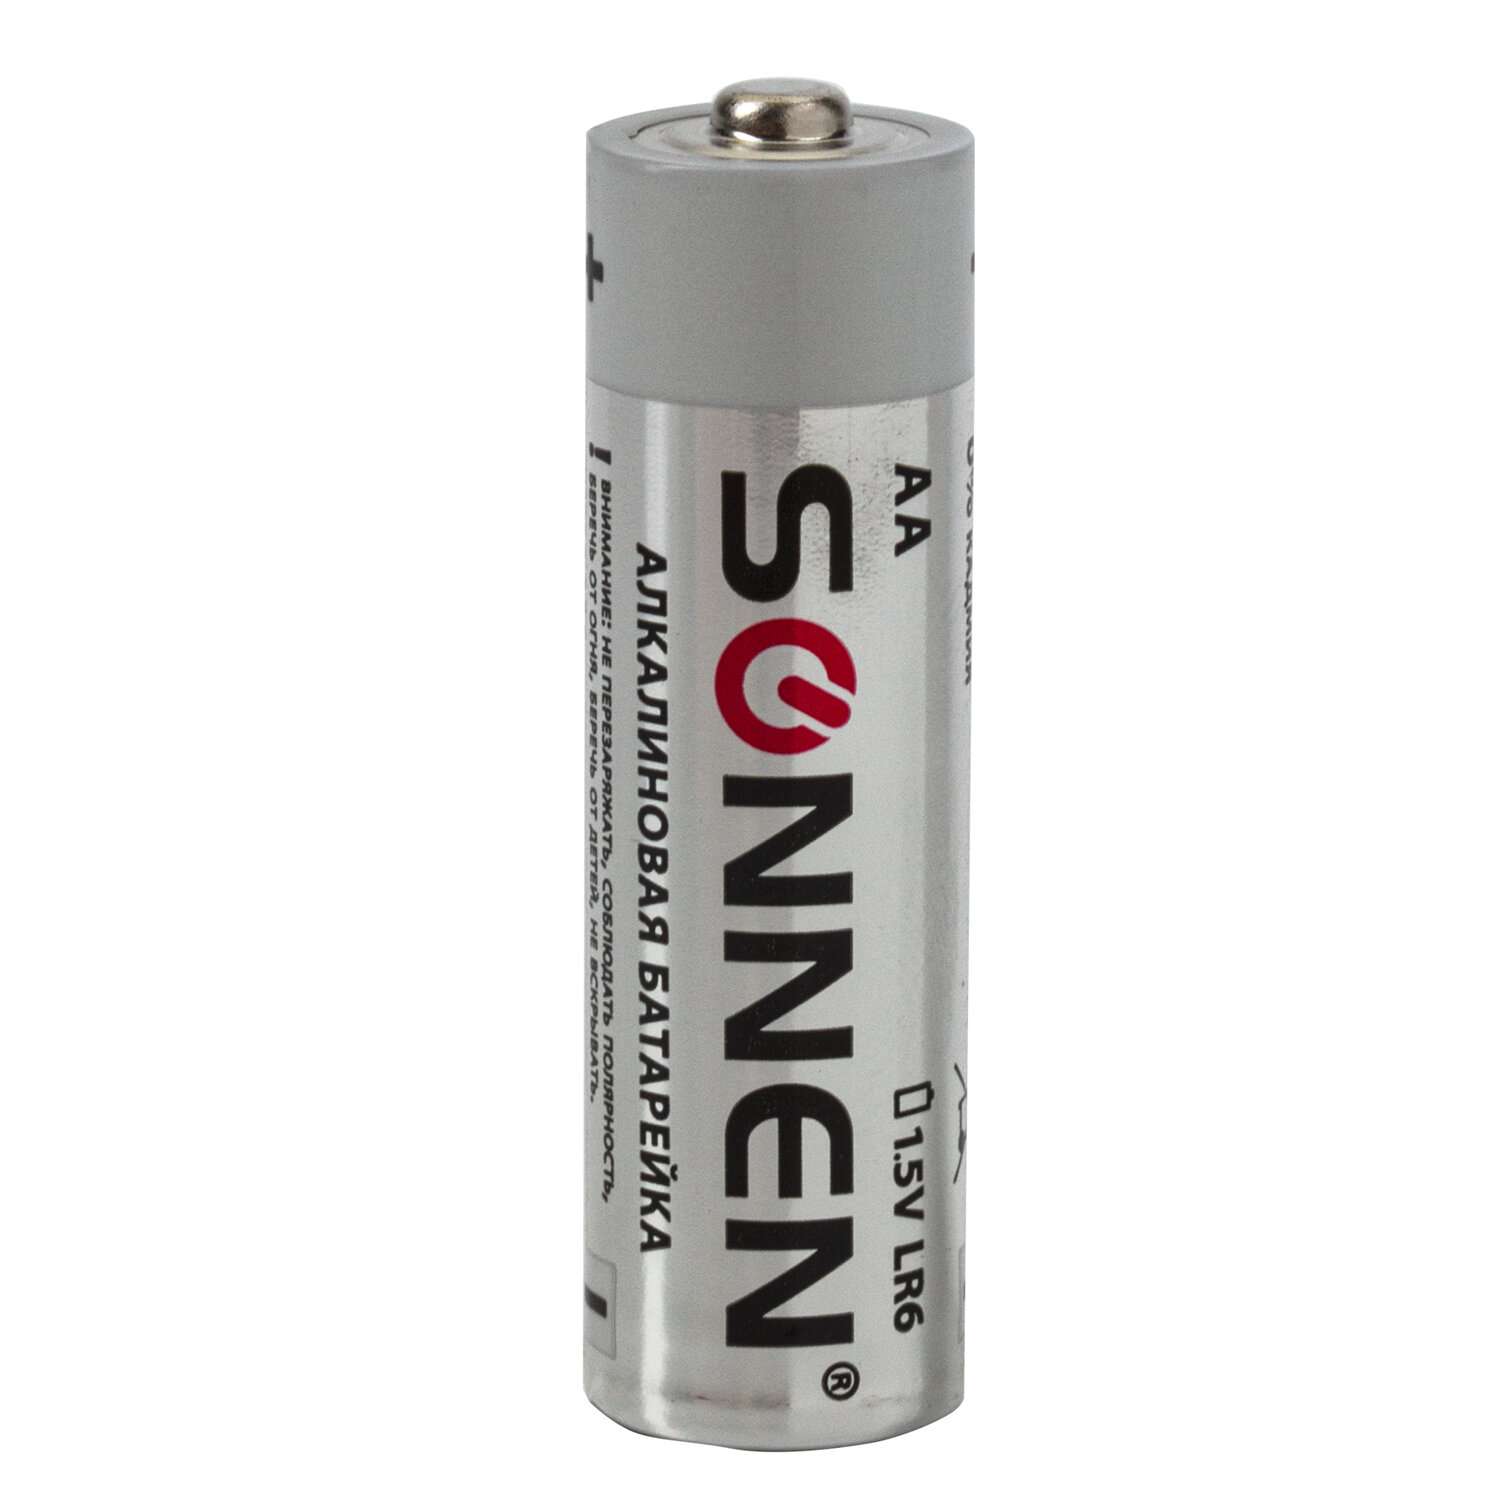 Батарейки Sonnen пальчиковые АА алкалиновые 24 штуки для пульта часов весов фонарика - фото 6